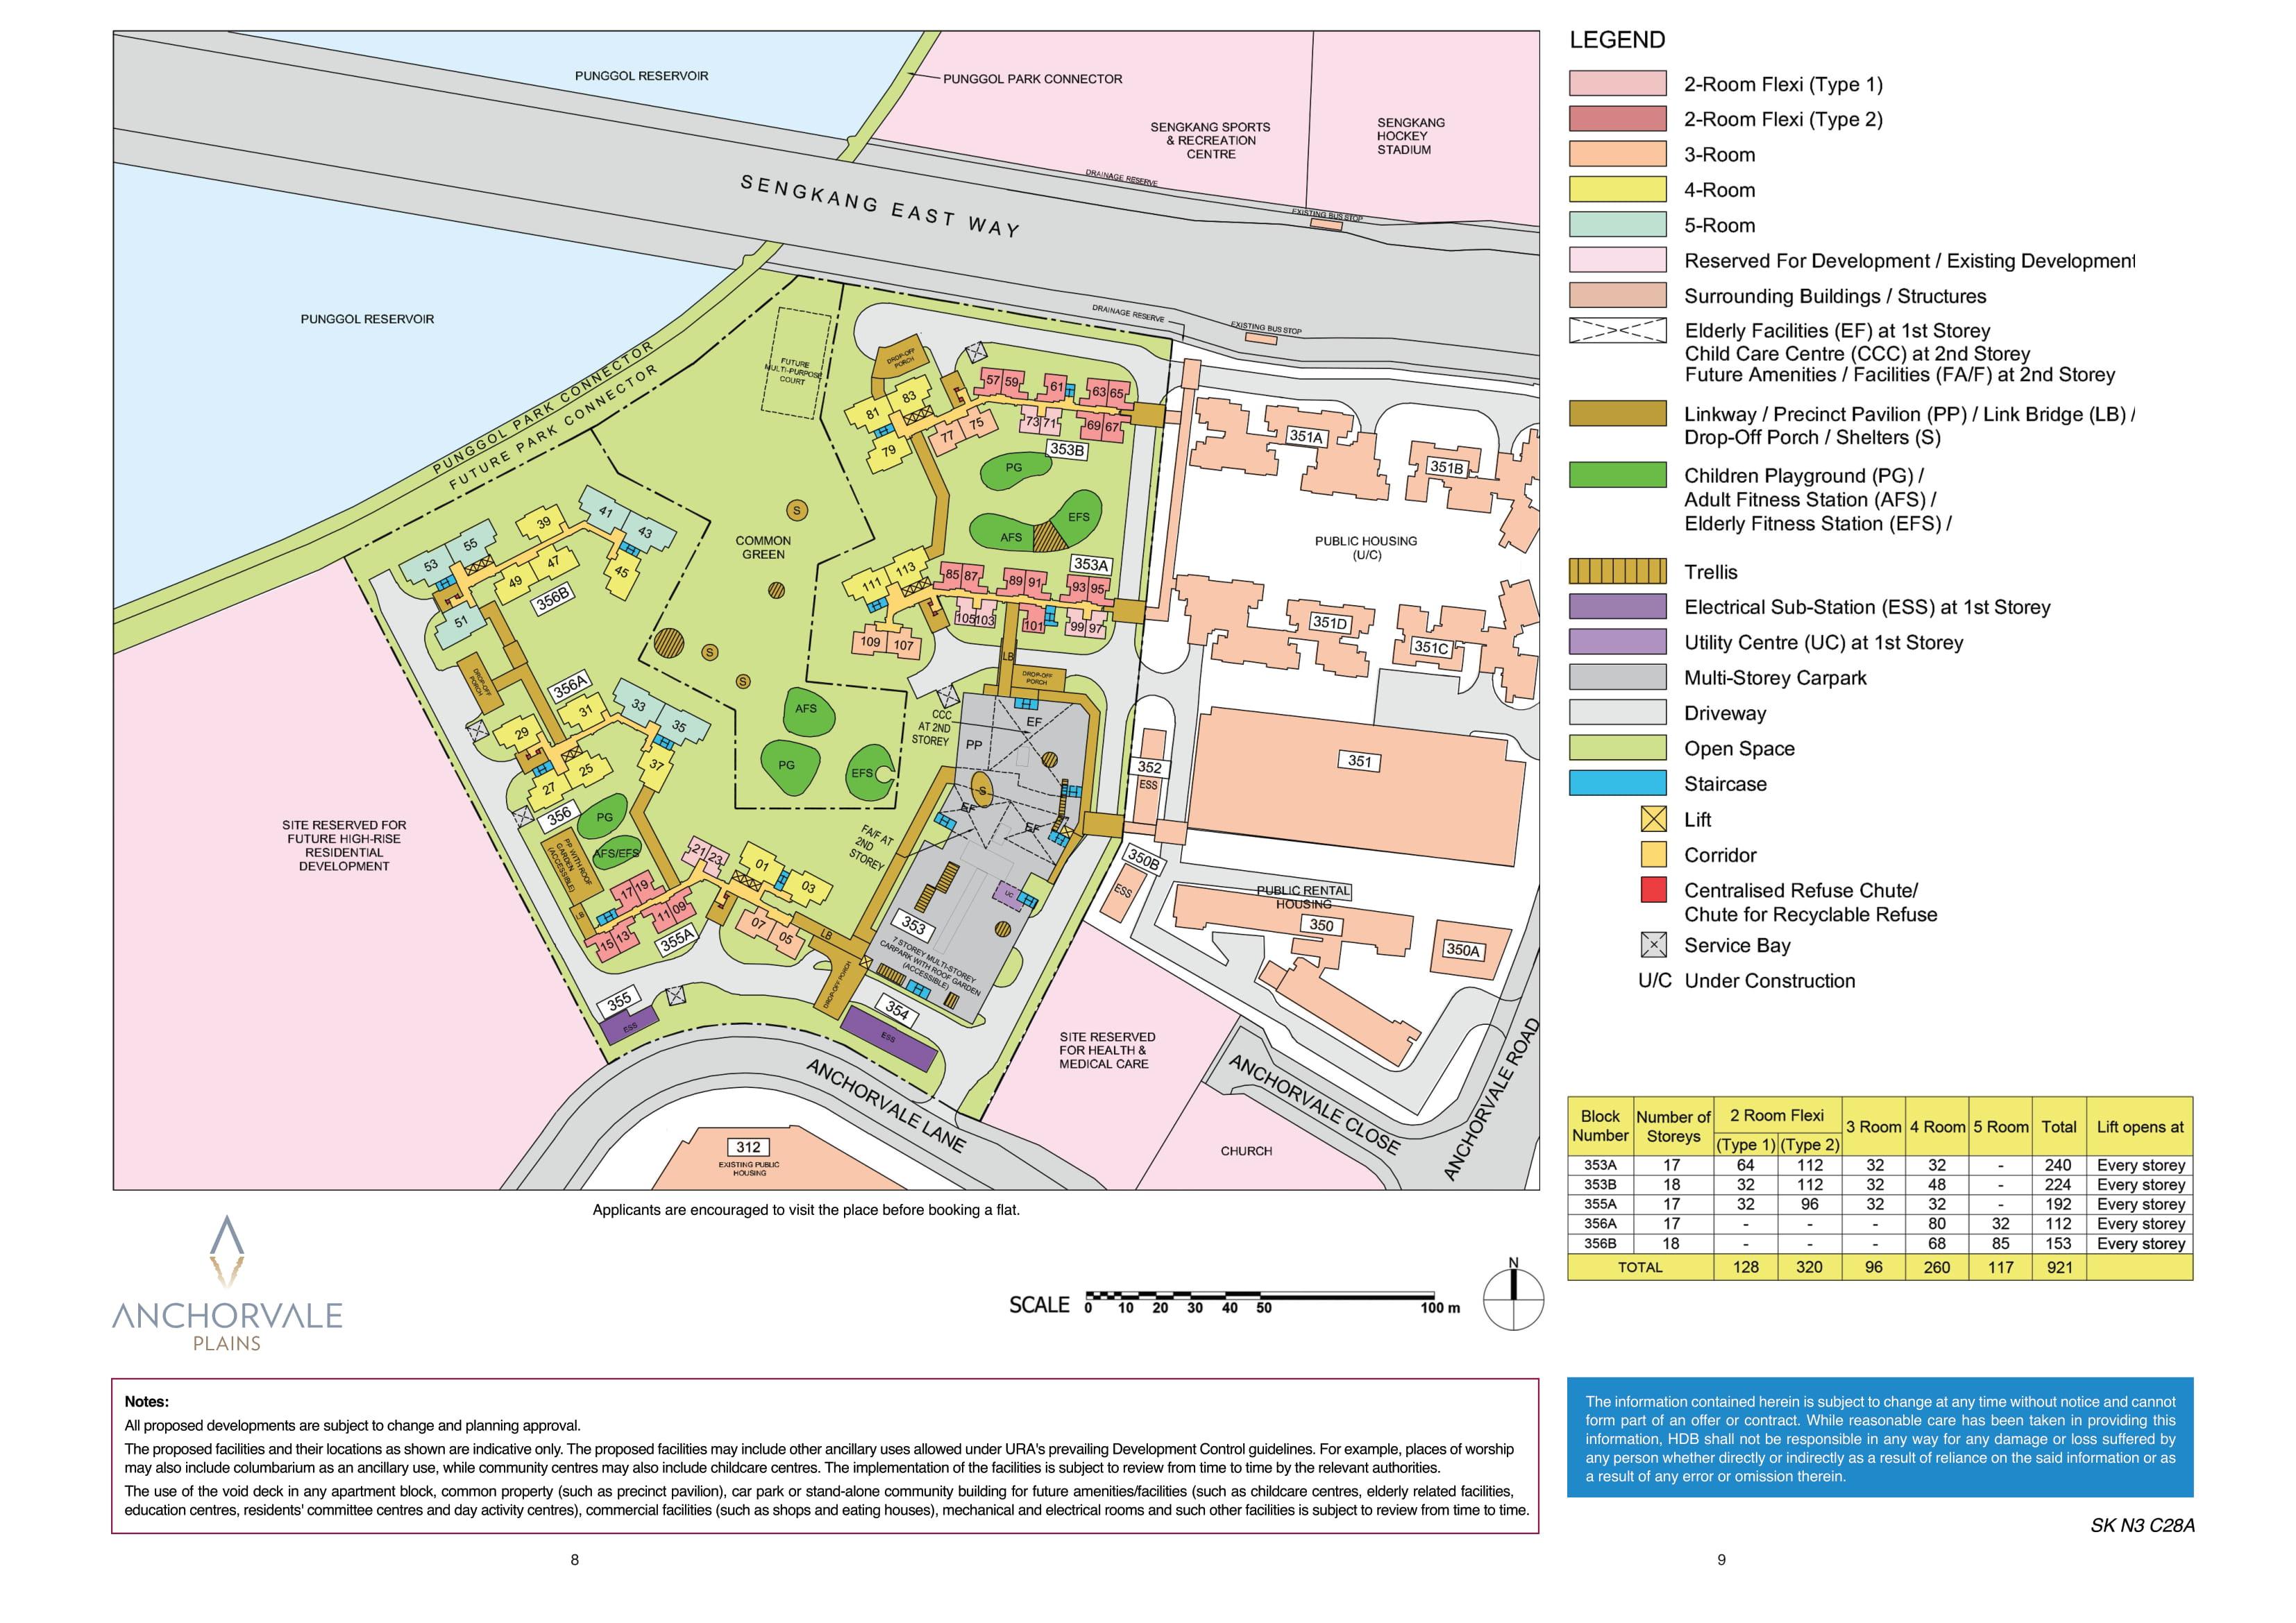 Anchorvale Plains site-plan